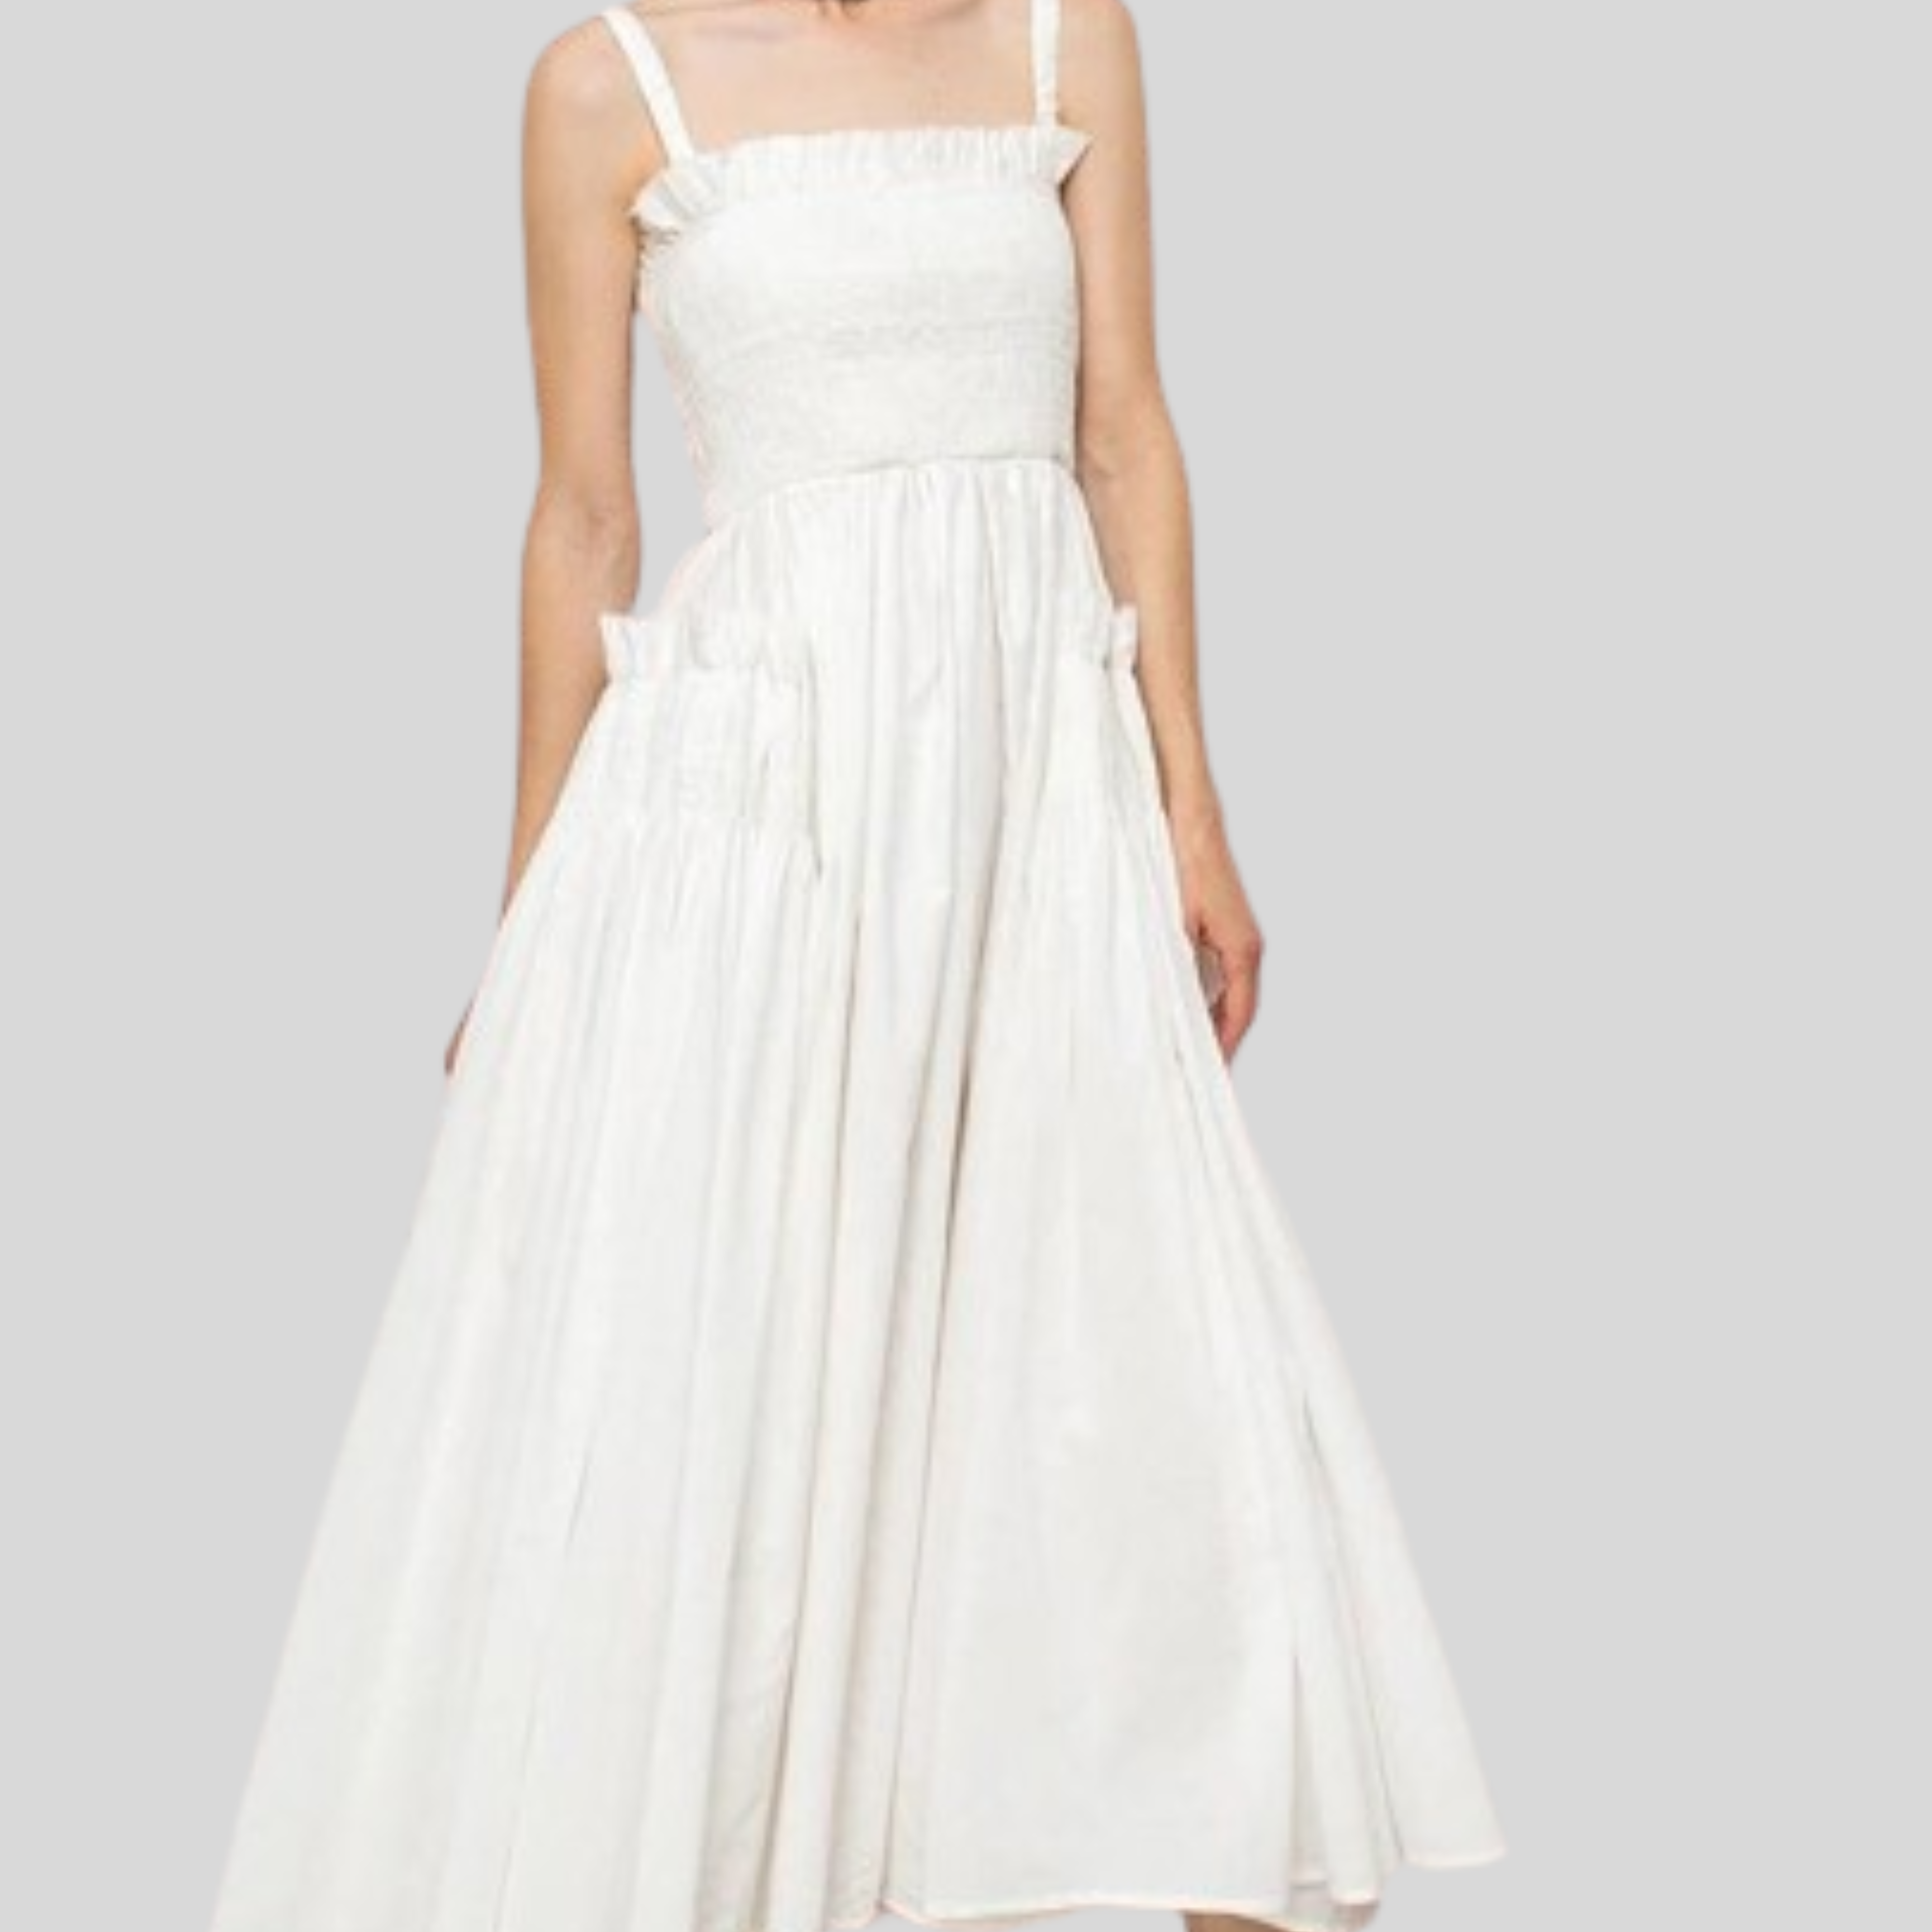 Selene White Slip Midi Dress: Timeless Elegance.